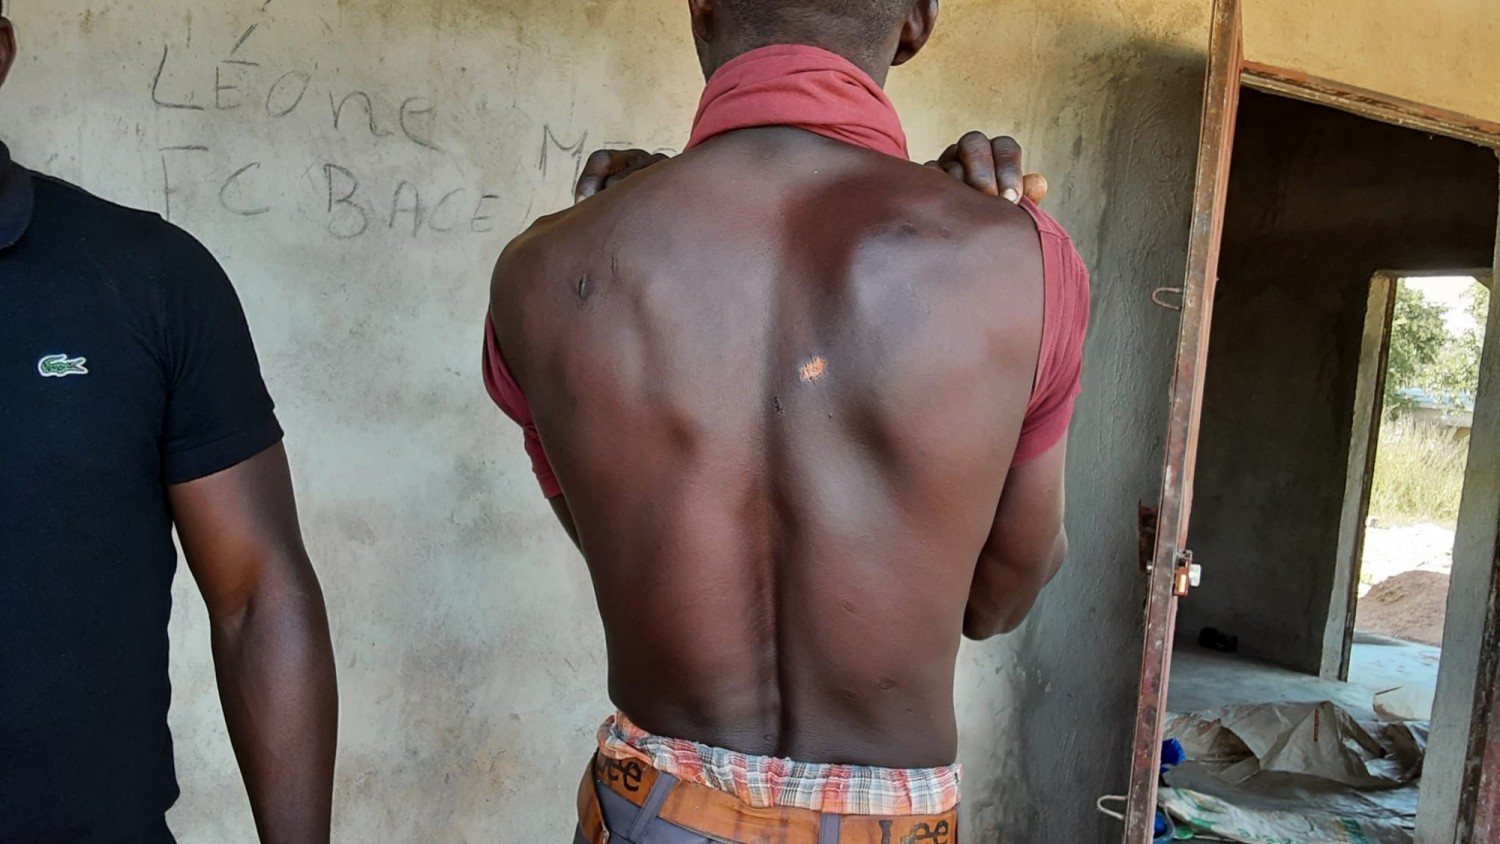 Cote d'Ivoire : Doropo, une expédition punitive des forces de défense dans un village ayant occasionné le viol de 5 femmes, domiciles cambriolés, commerces saccagés, dénoncée par un député